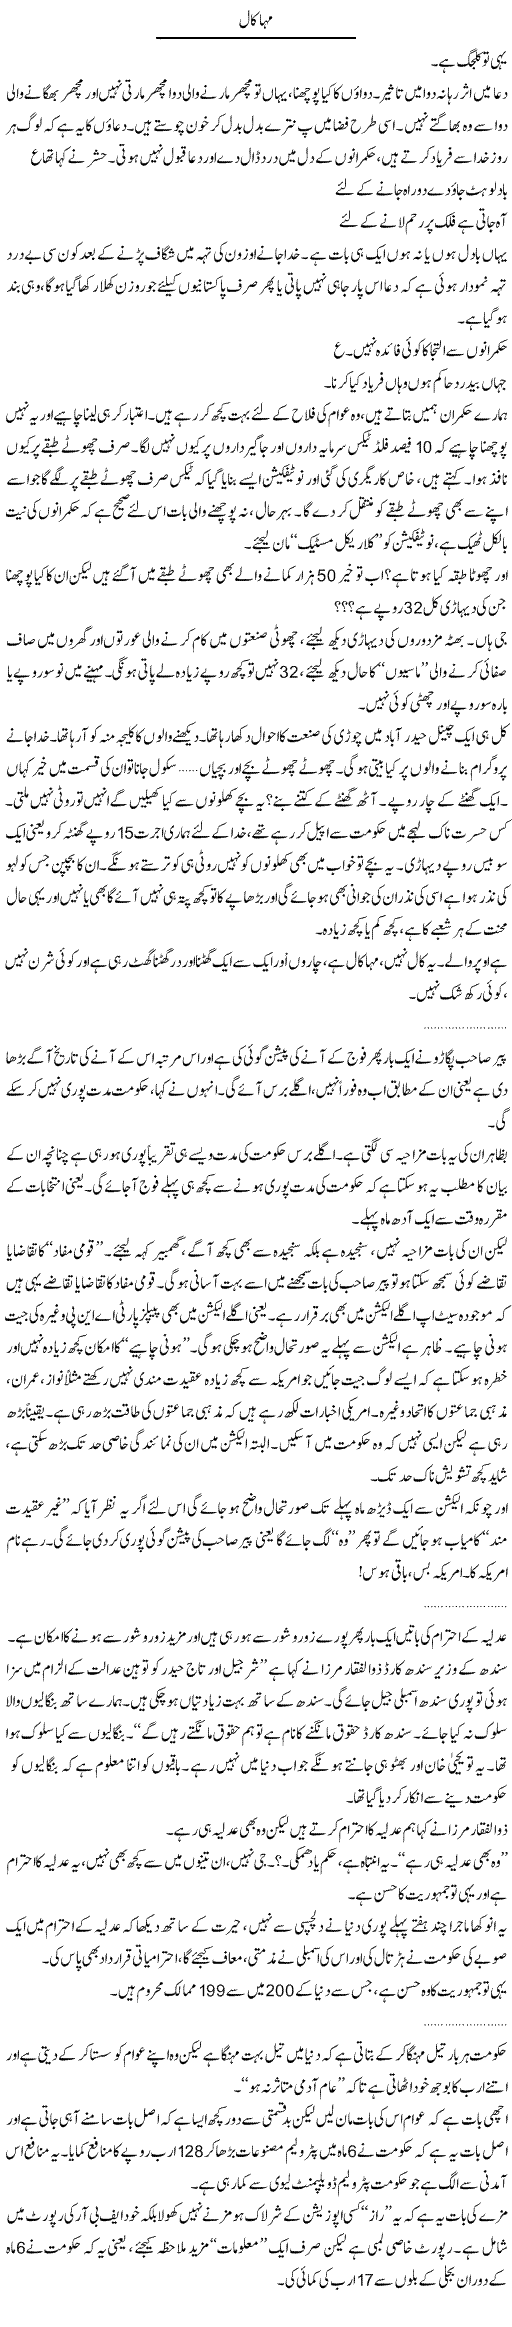 Inflation in Pakistan Express Column Abdullah Tariq 5 April 2011